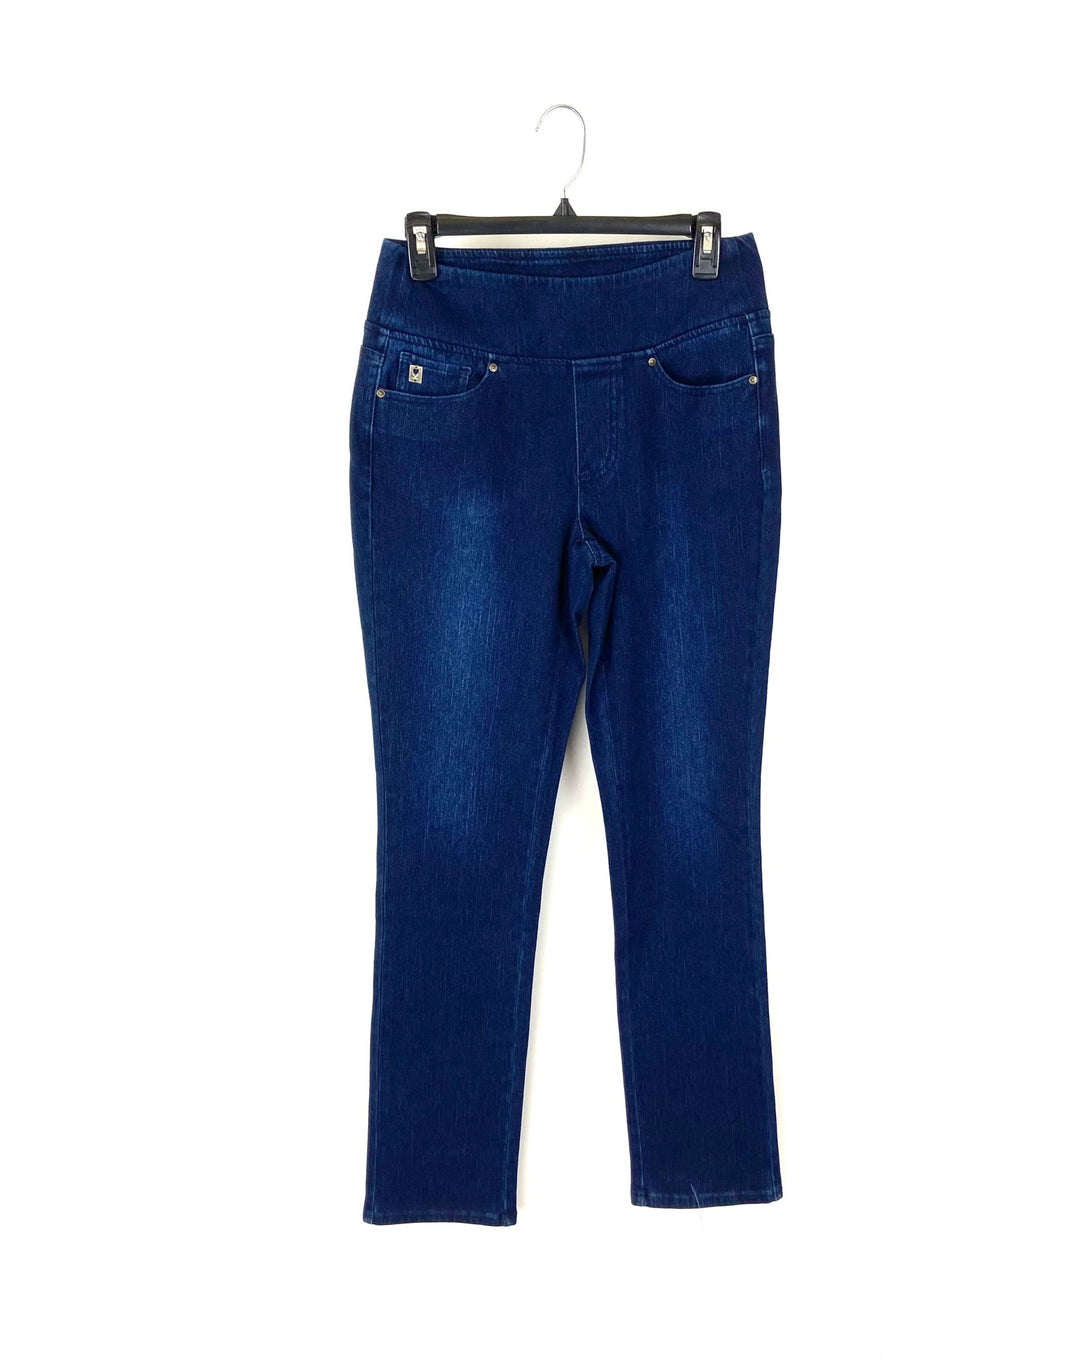 Dark Blue Jeans - Size 6/8, 12/14